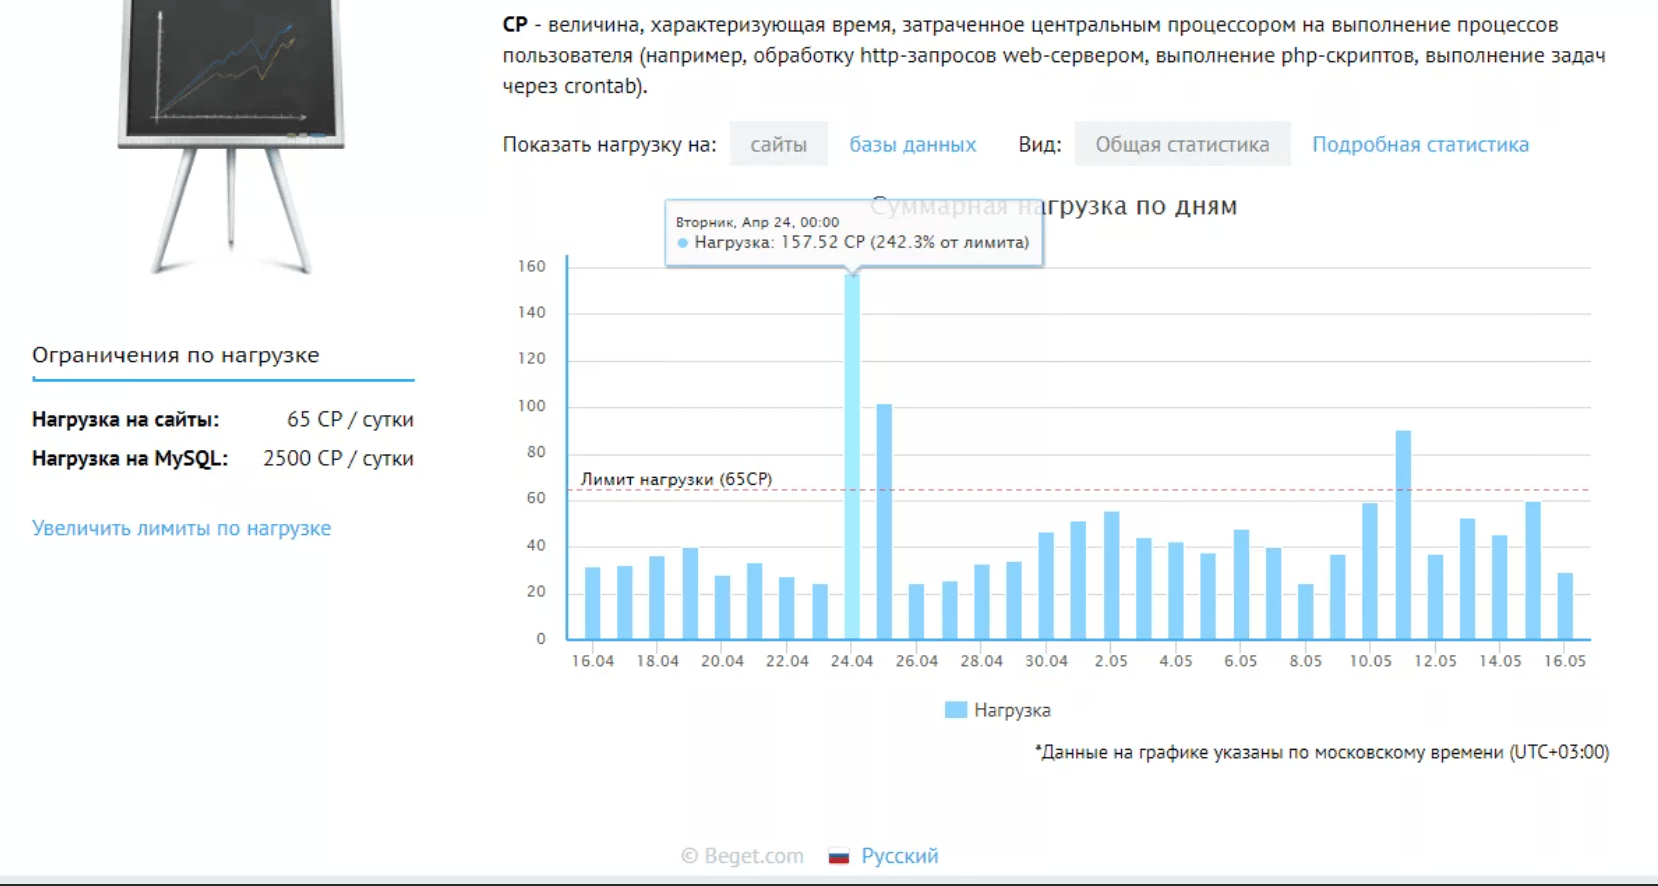 Превышение нагрузки на центральный процессор сервера beget.ru